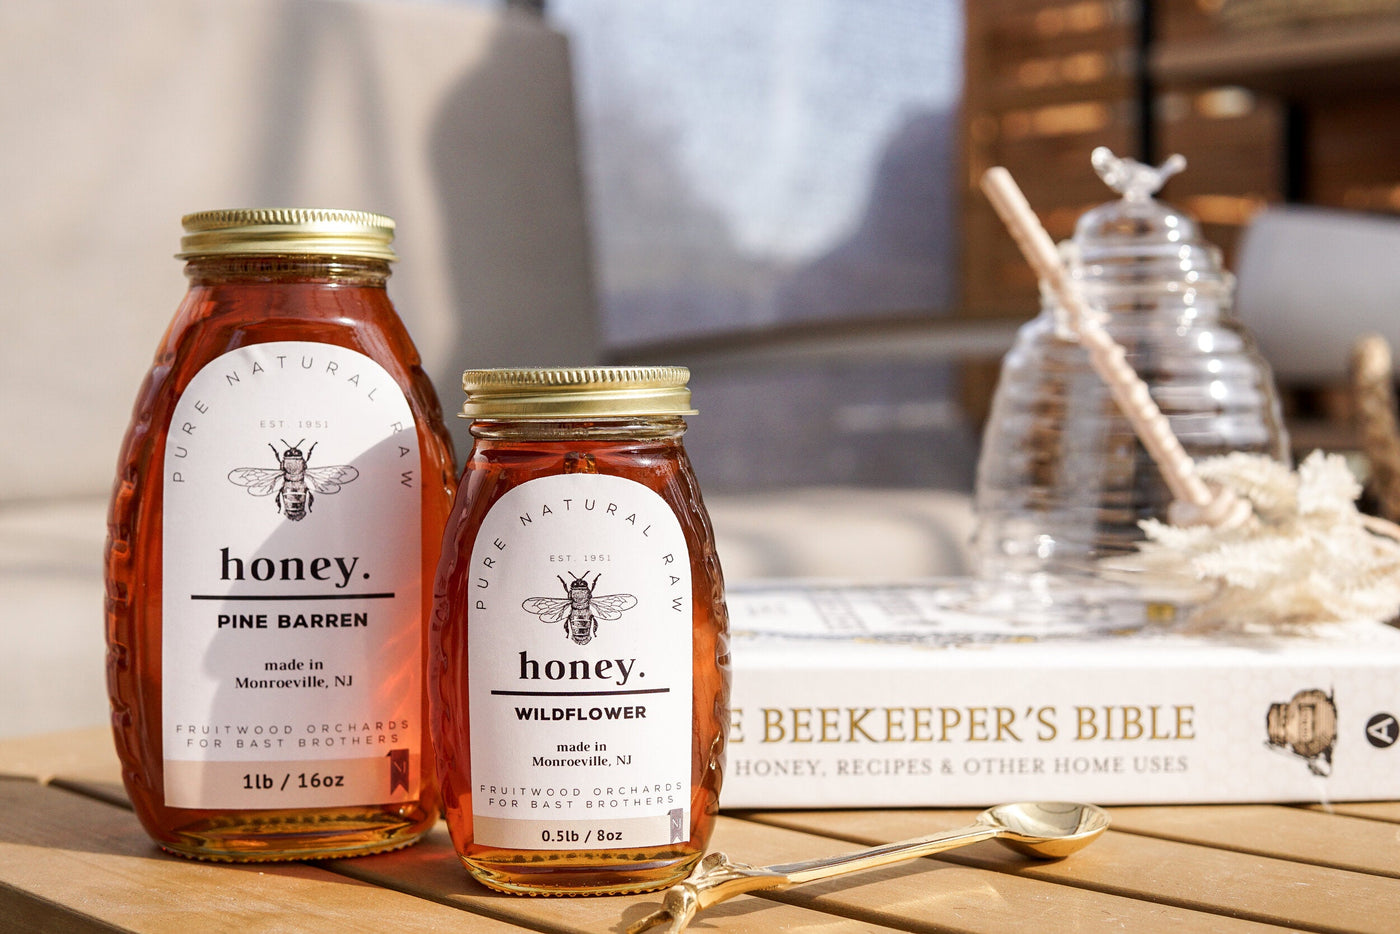 Pine Barren Honey, 16 ounce